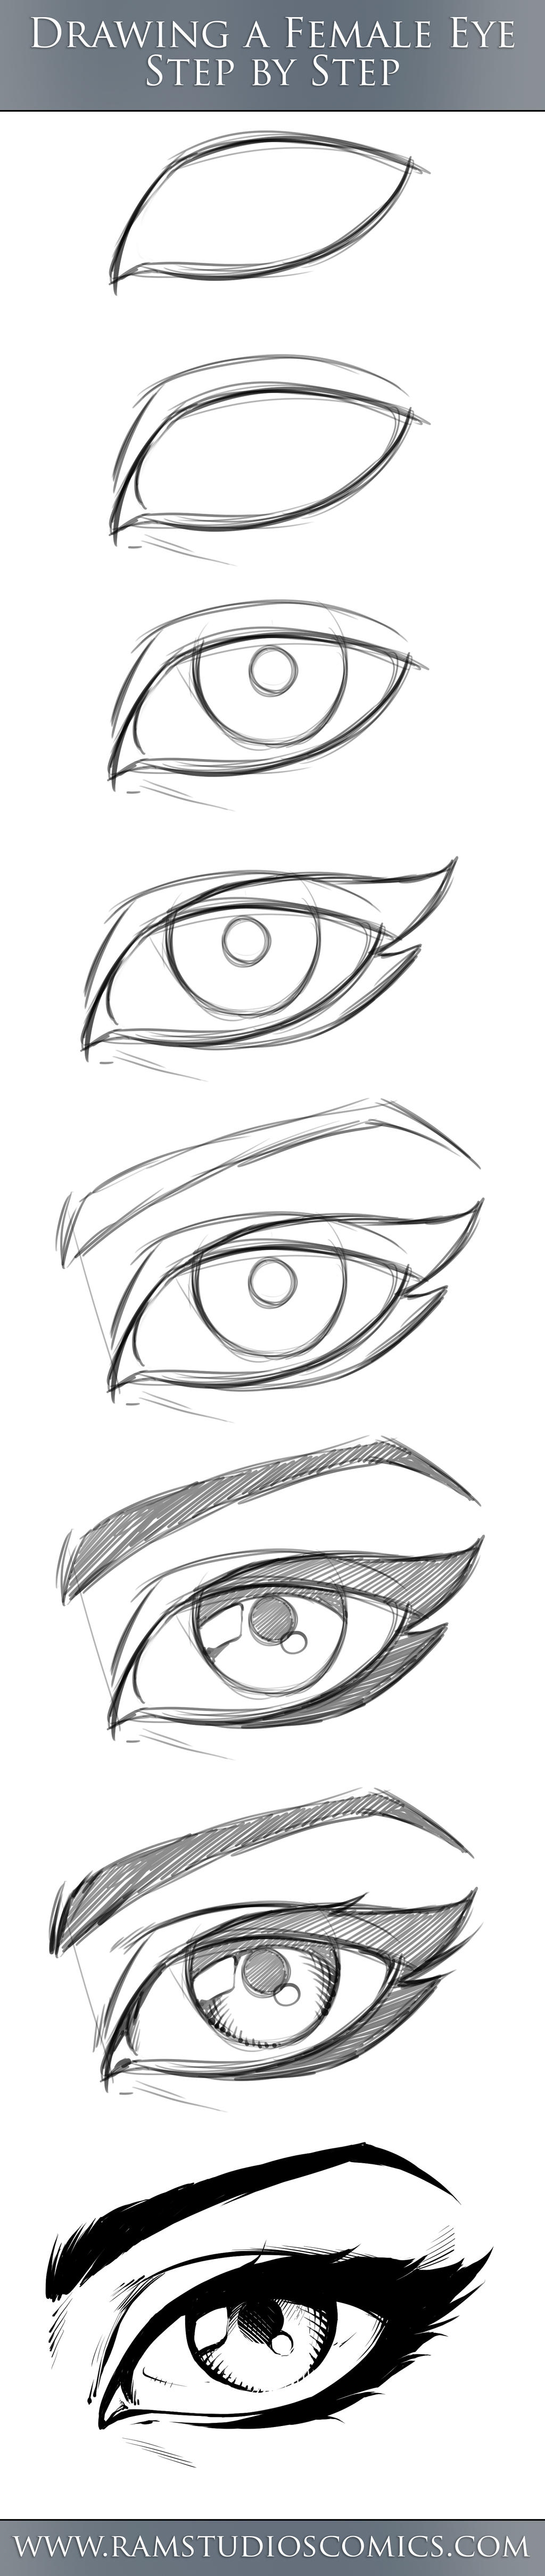 Как нарисовать глаз поэтапно карандашом для начинающих. Уроки рисования глаза карандашом для начинающих. Глаза карандашом для начинающих. Поэтапное рисование глаза карандашом. Глаз пошагово карандашом.